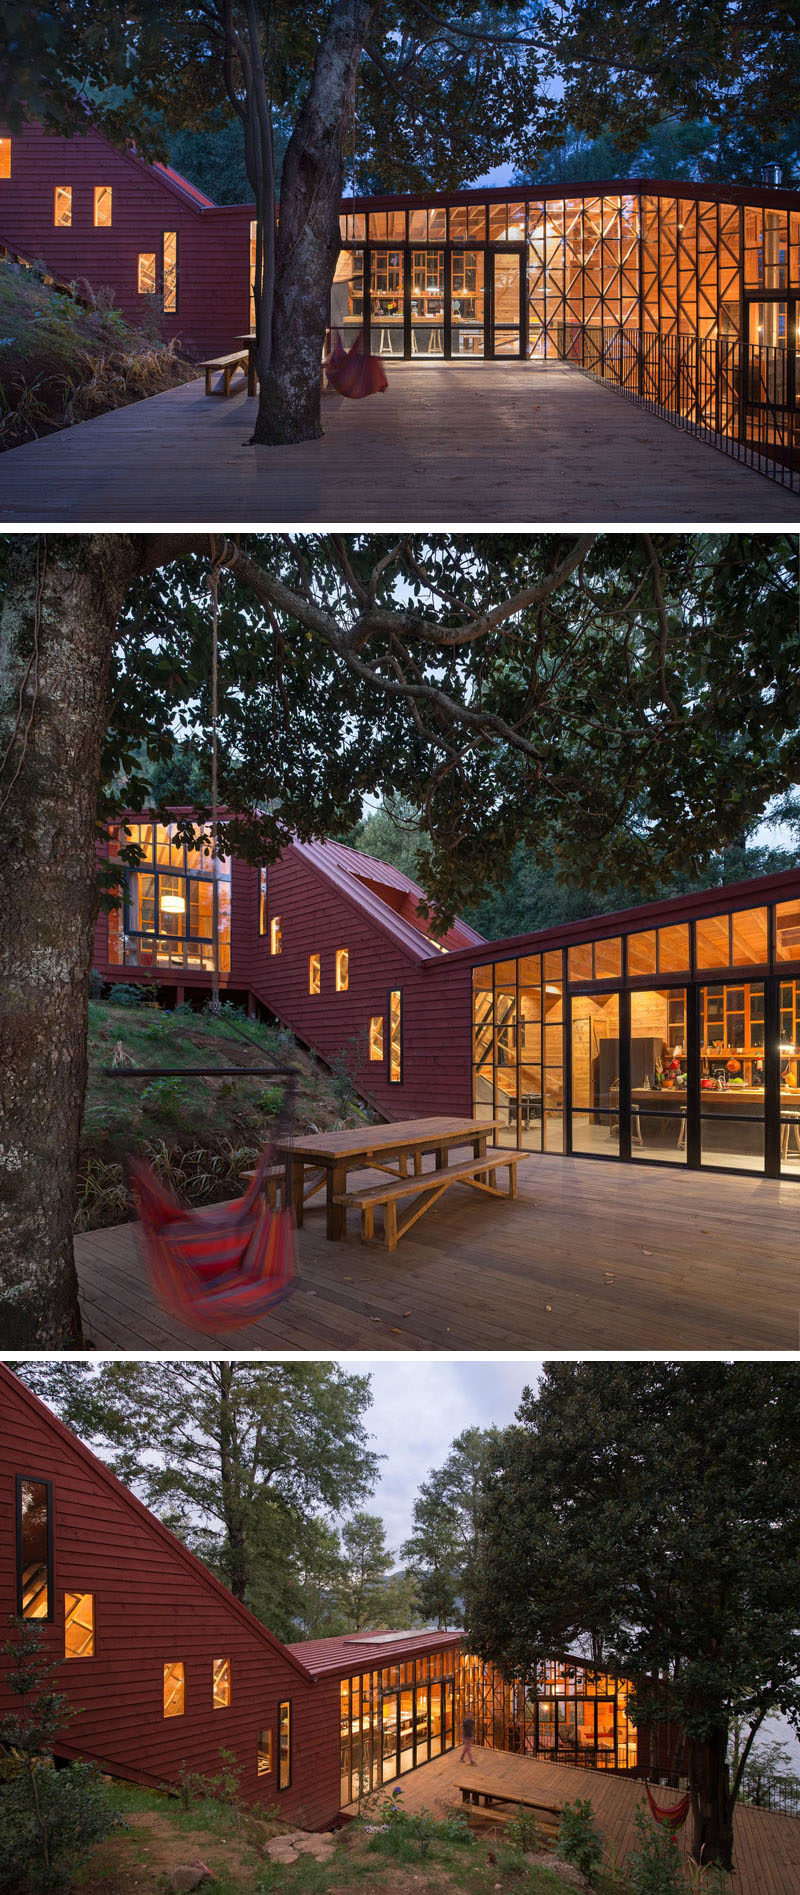 В этом доме есть большая терраса рядом с кухней, которая построена вокруг дерева и обеспечивает место для обедов и развлечений на открытом воздухе.